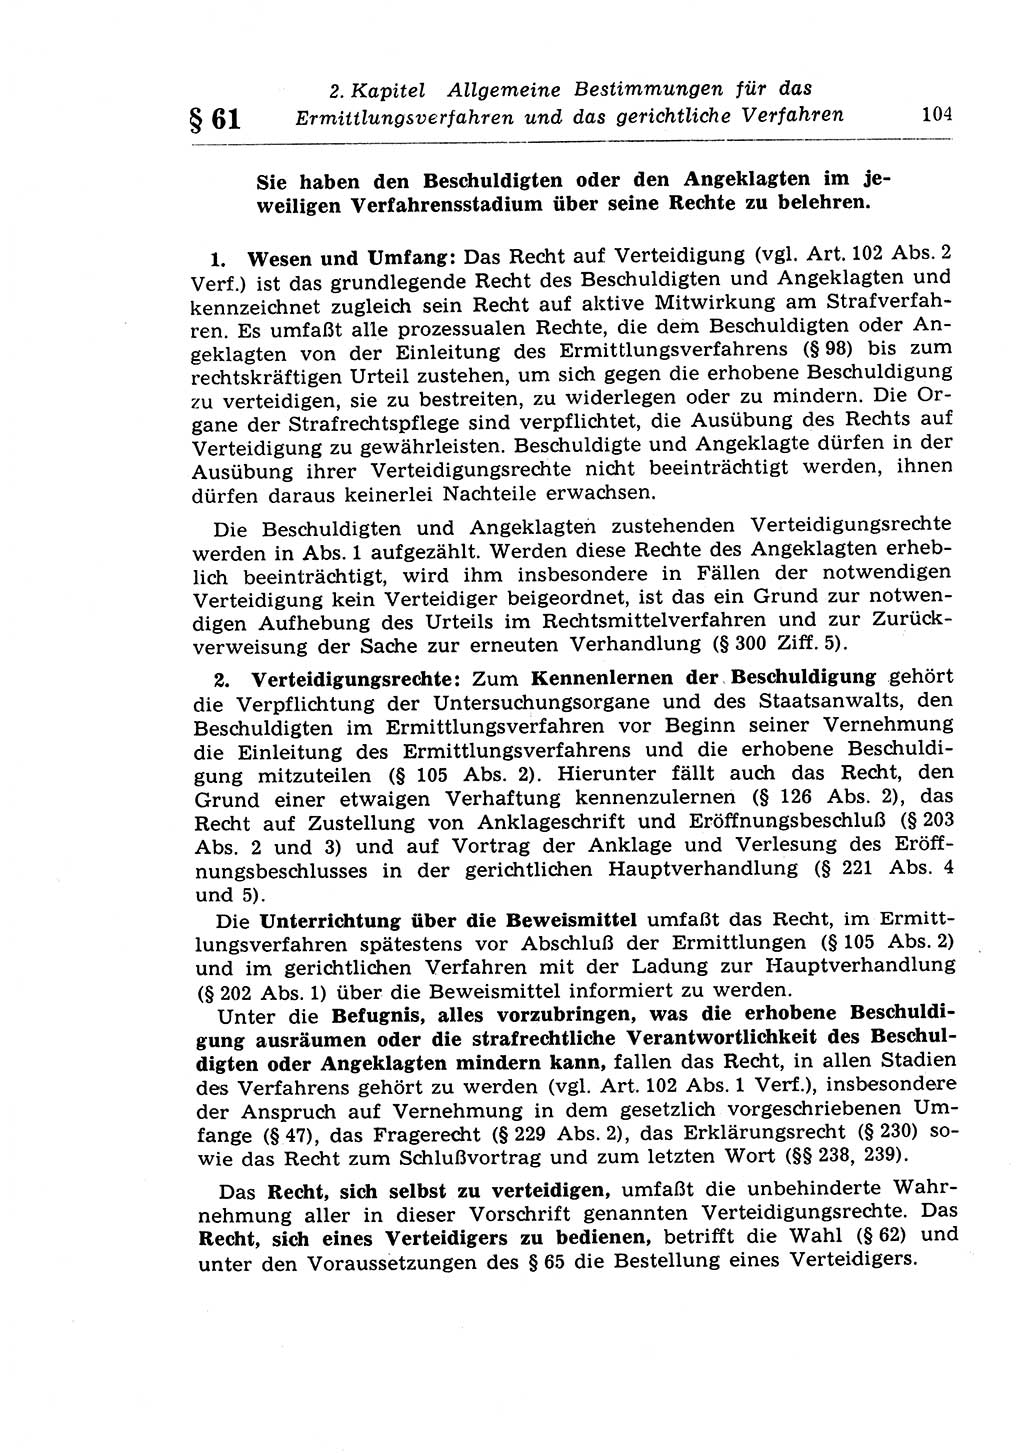 Strafprozeßrecht der DDR (Deutsche Demokratische Republik), Lehrkommentar zur Strafprozeßordnung (StPO) 1968, Seite 104 (Strafprozeßr. DDR Lehrkomm. StPO 19688, S. 104)